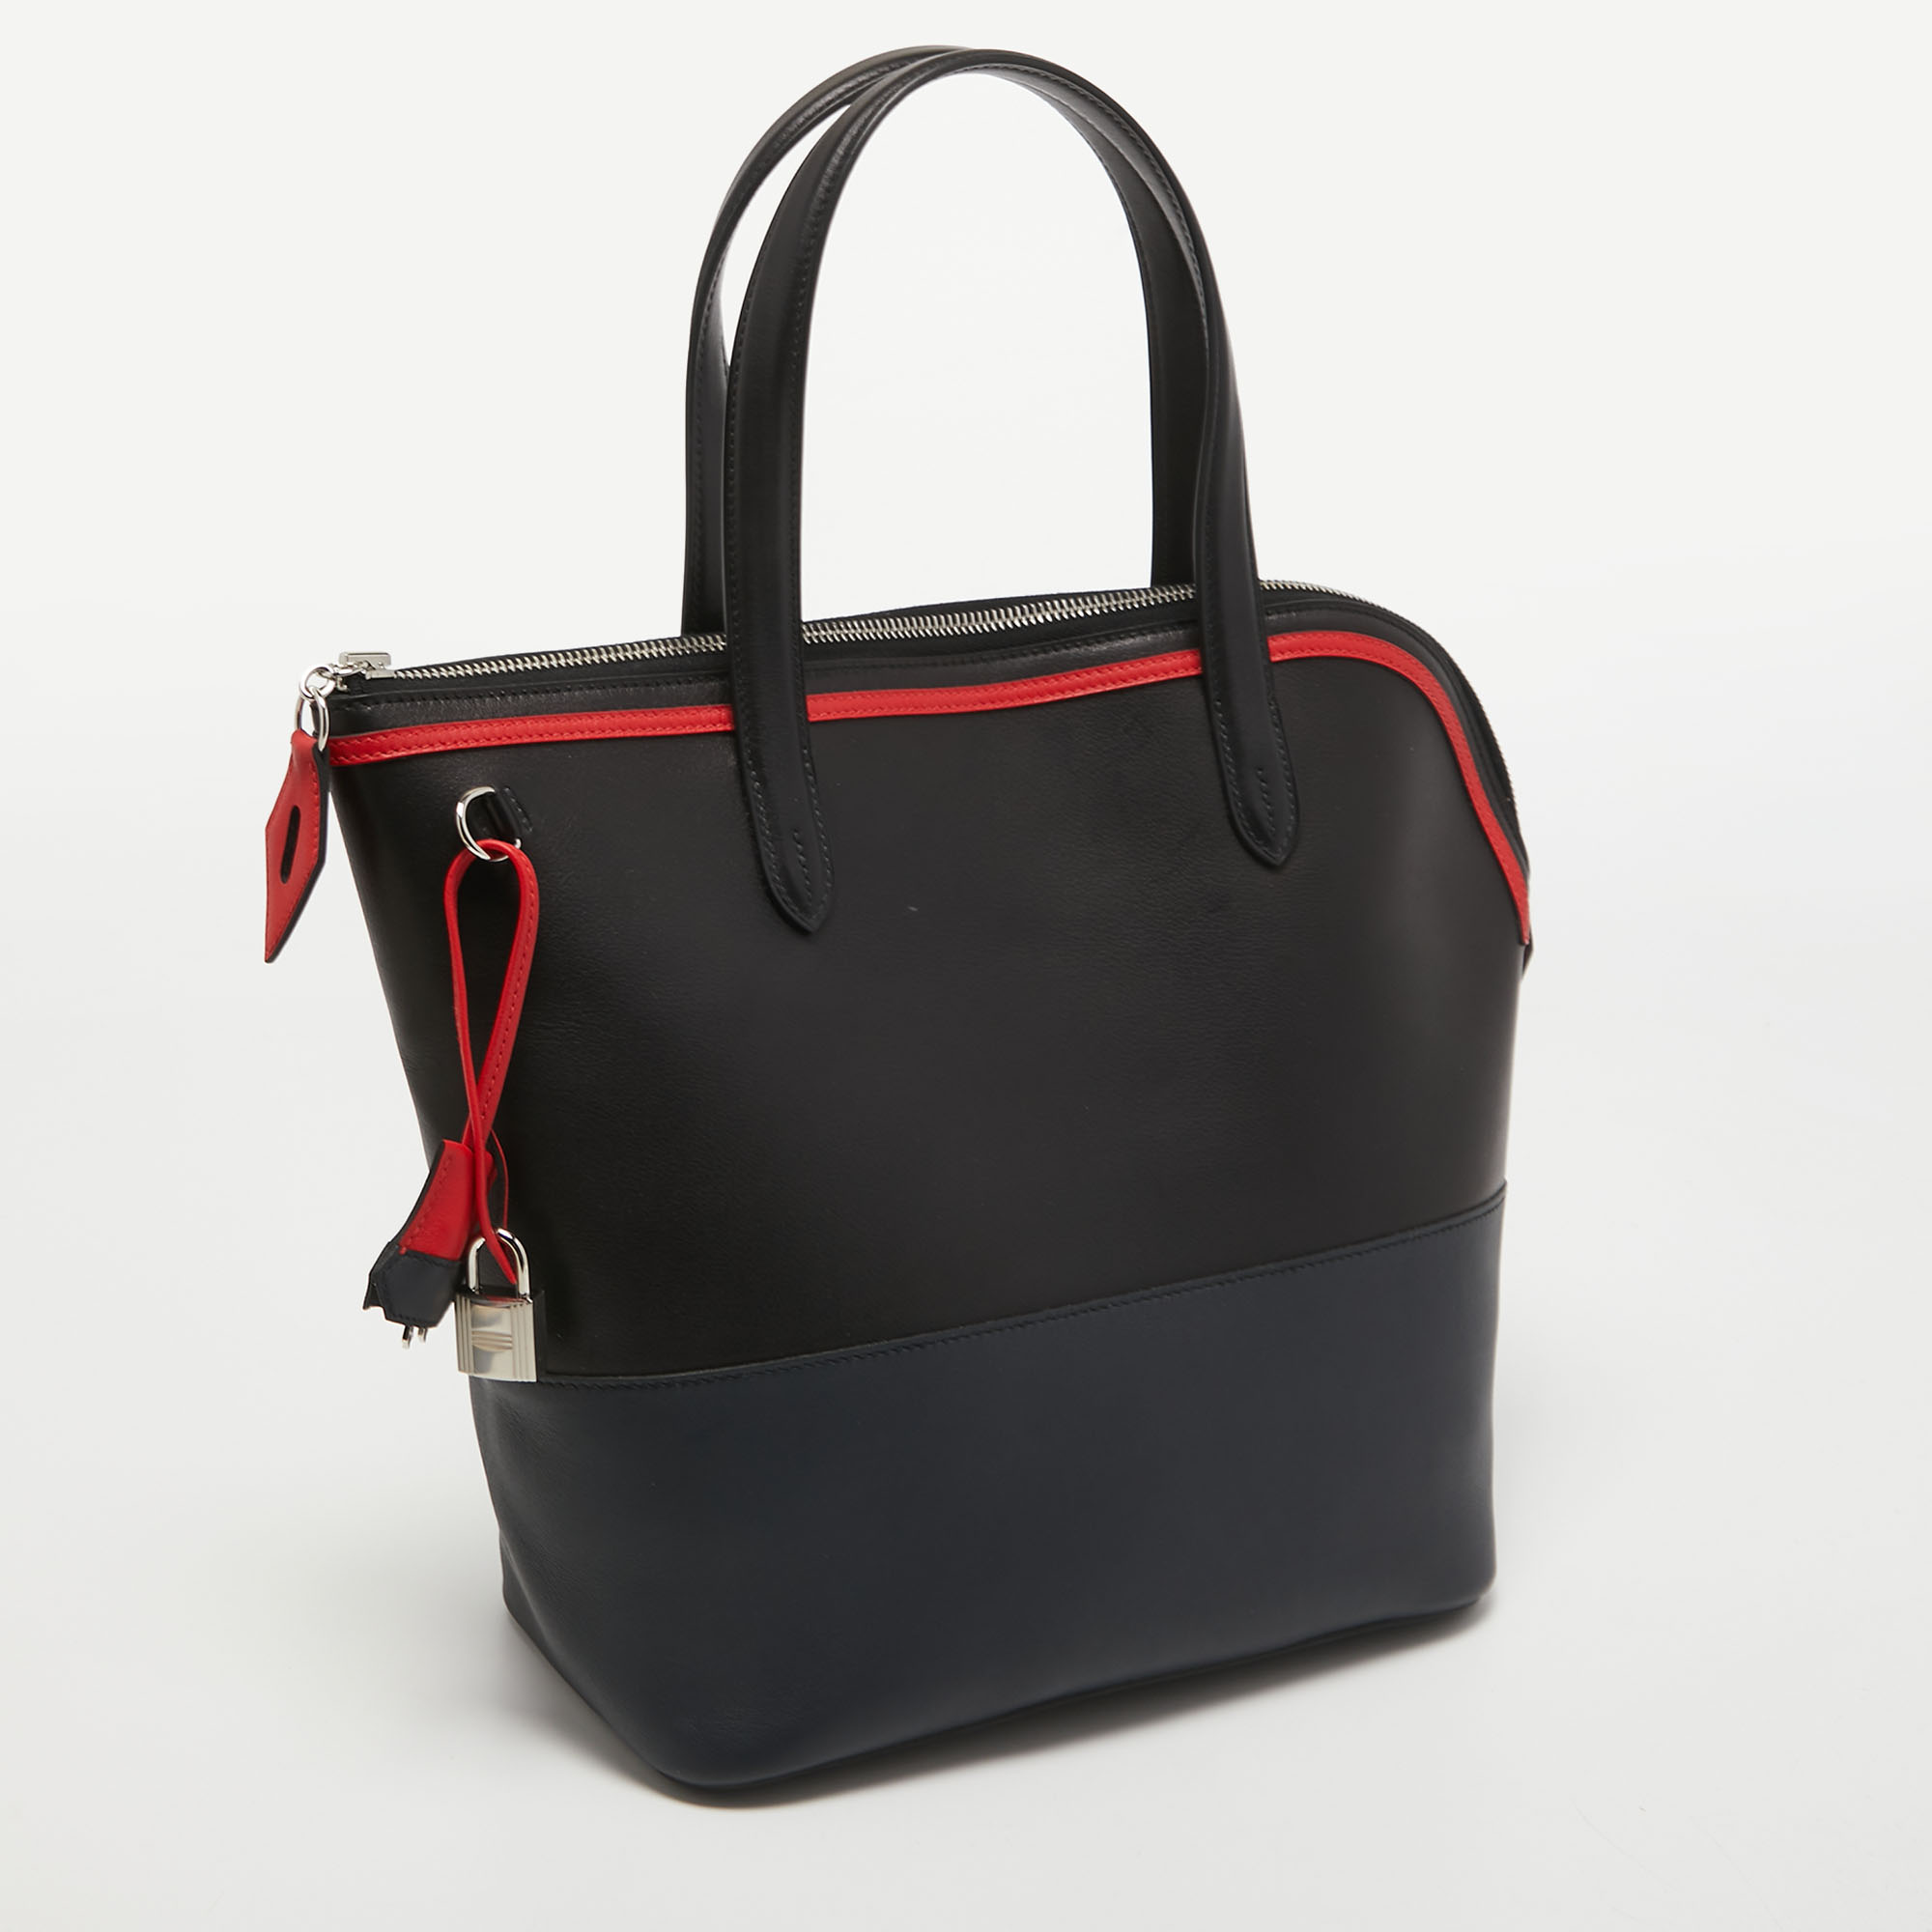 Hermes Black/Bleu Nuit/Rouge Evercolor And Swift Leather Transat Sailor Bag